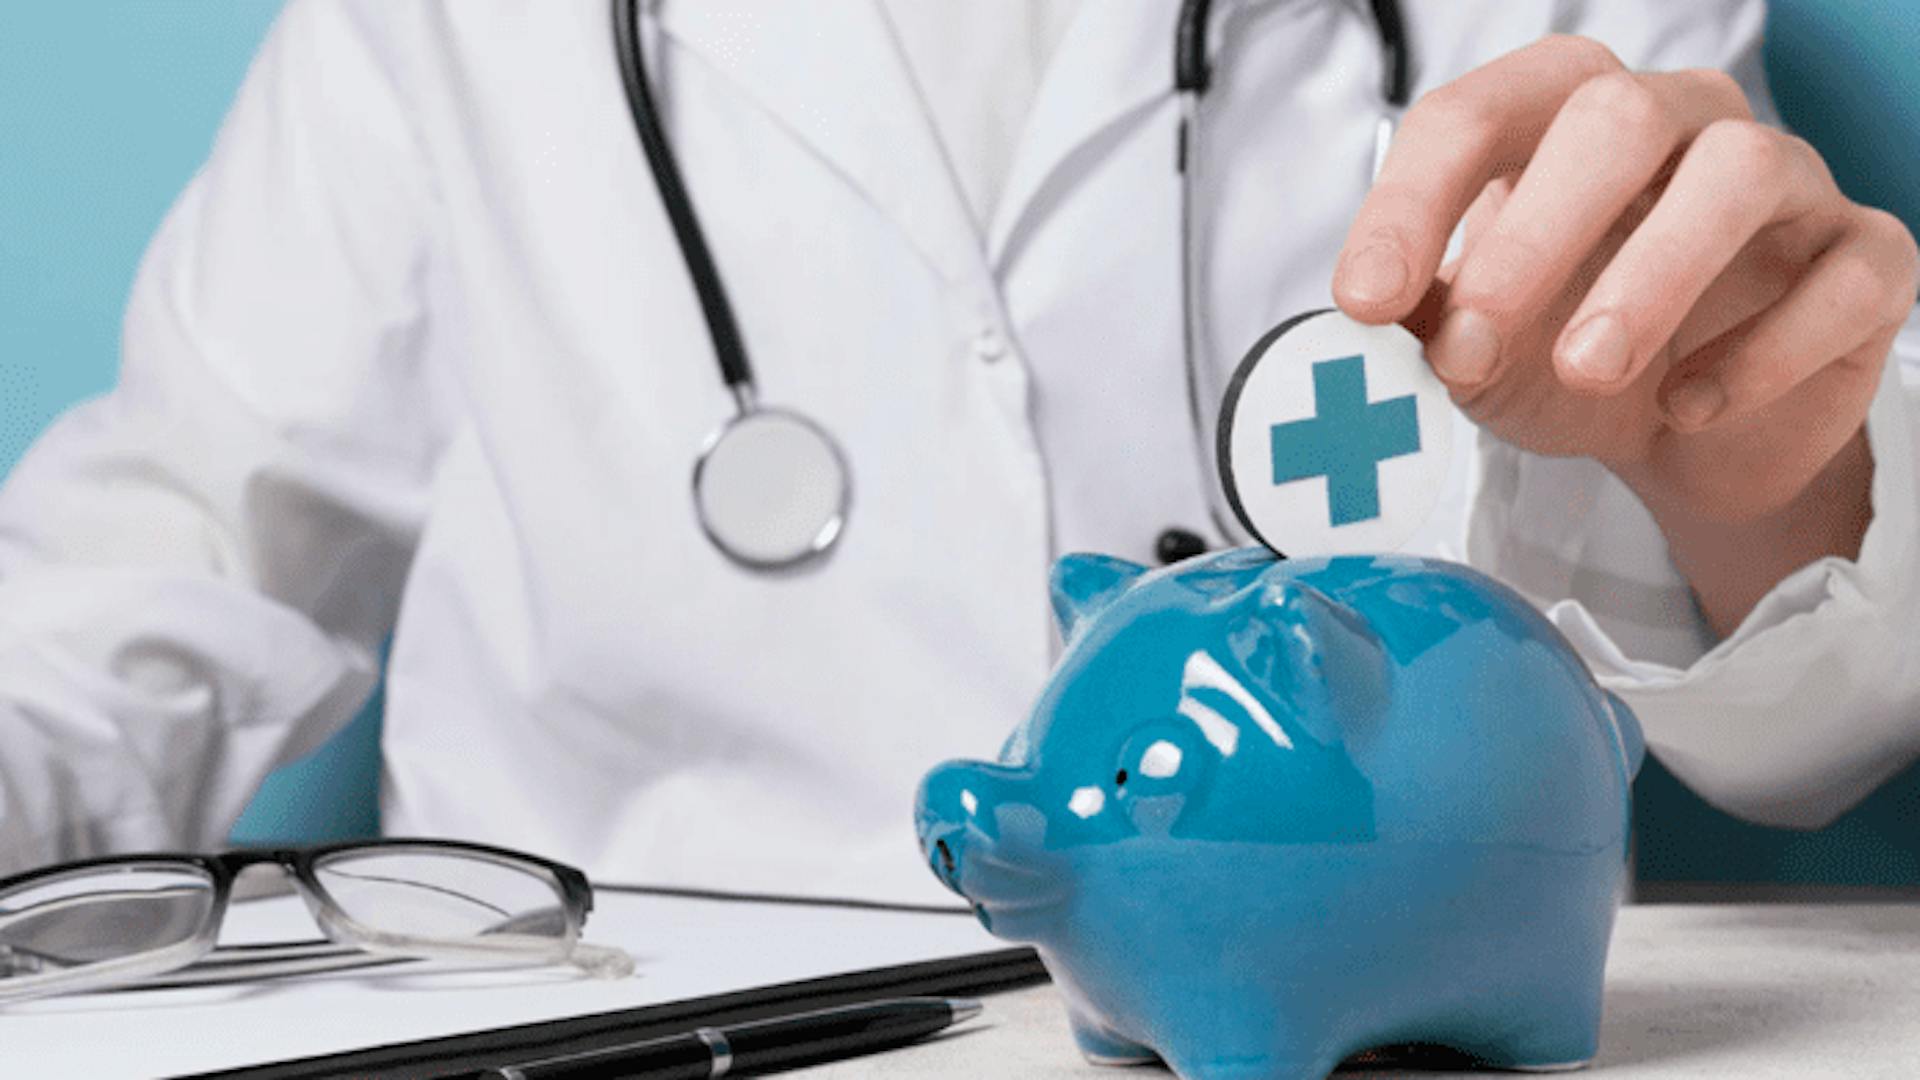 médico com jaleco branco e estetoscópio coloca moeda com símbolo da saúde em cofrinho azul